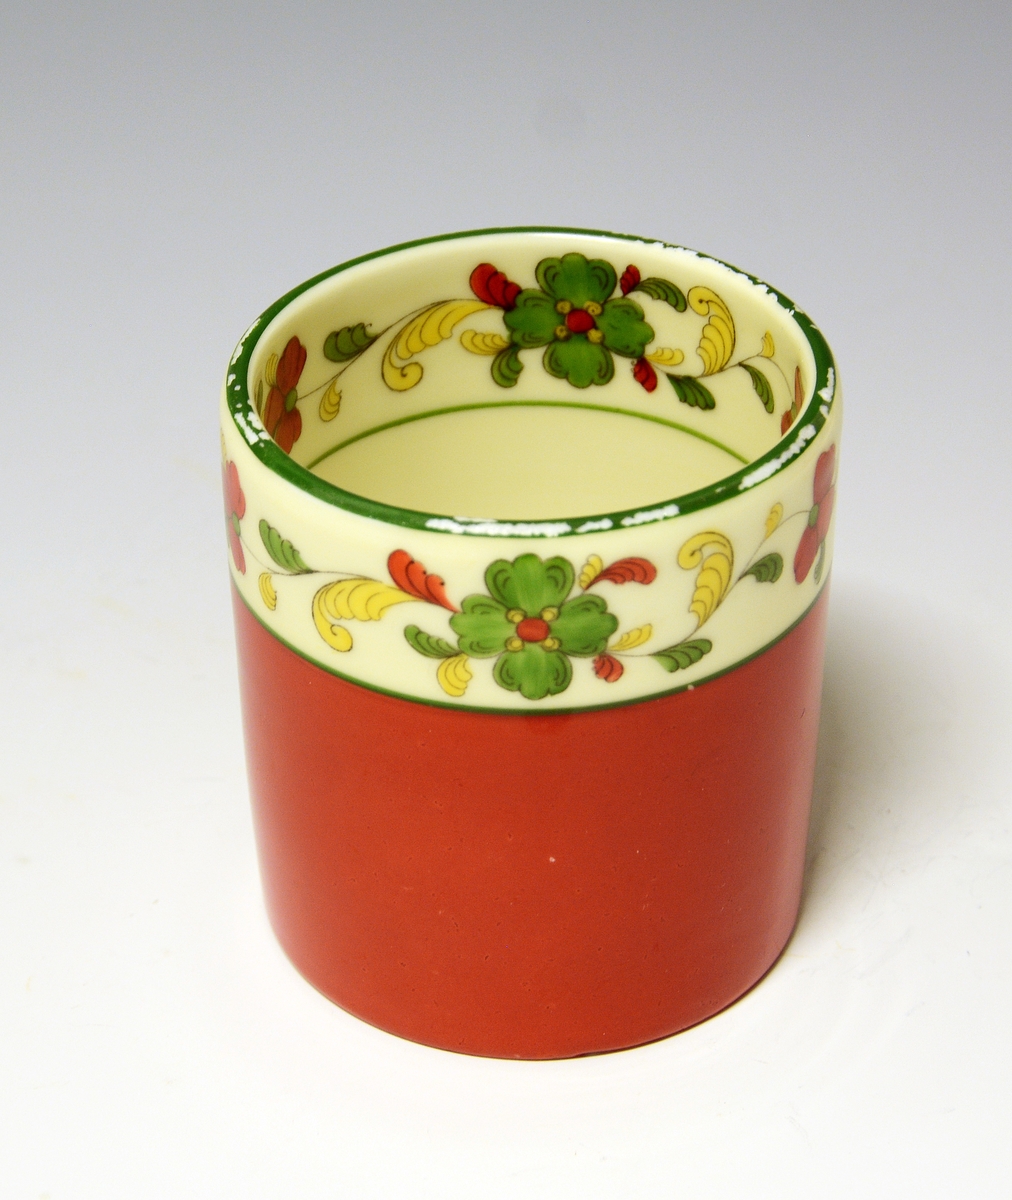 Sylinderformet beger av porselen dekorert med nordisk.

Dekor: Nordisk, håndmalt
Fabrikkmerke: Grønt anker med PP (1911-1935) + grønt anker med PP og PORSGRUND - NORGE (1906-1914).